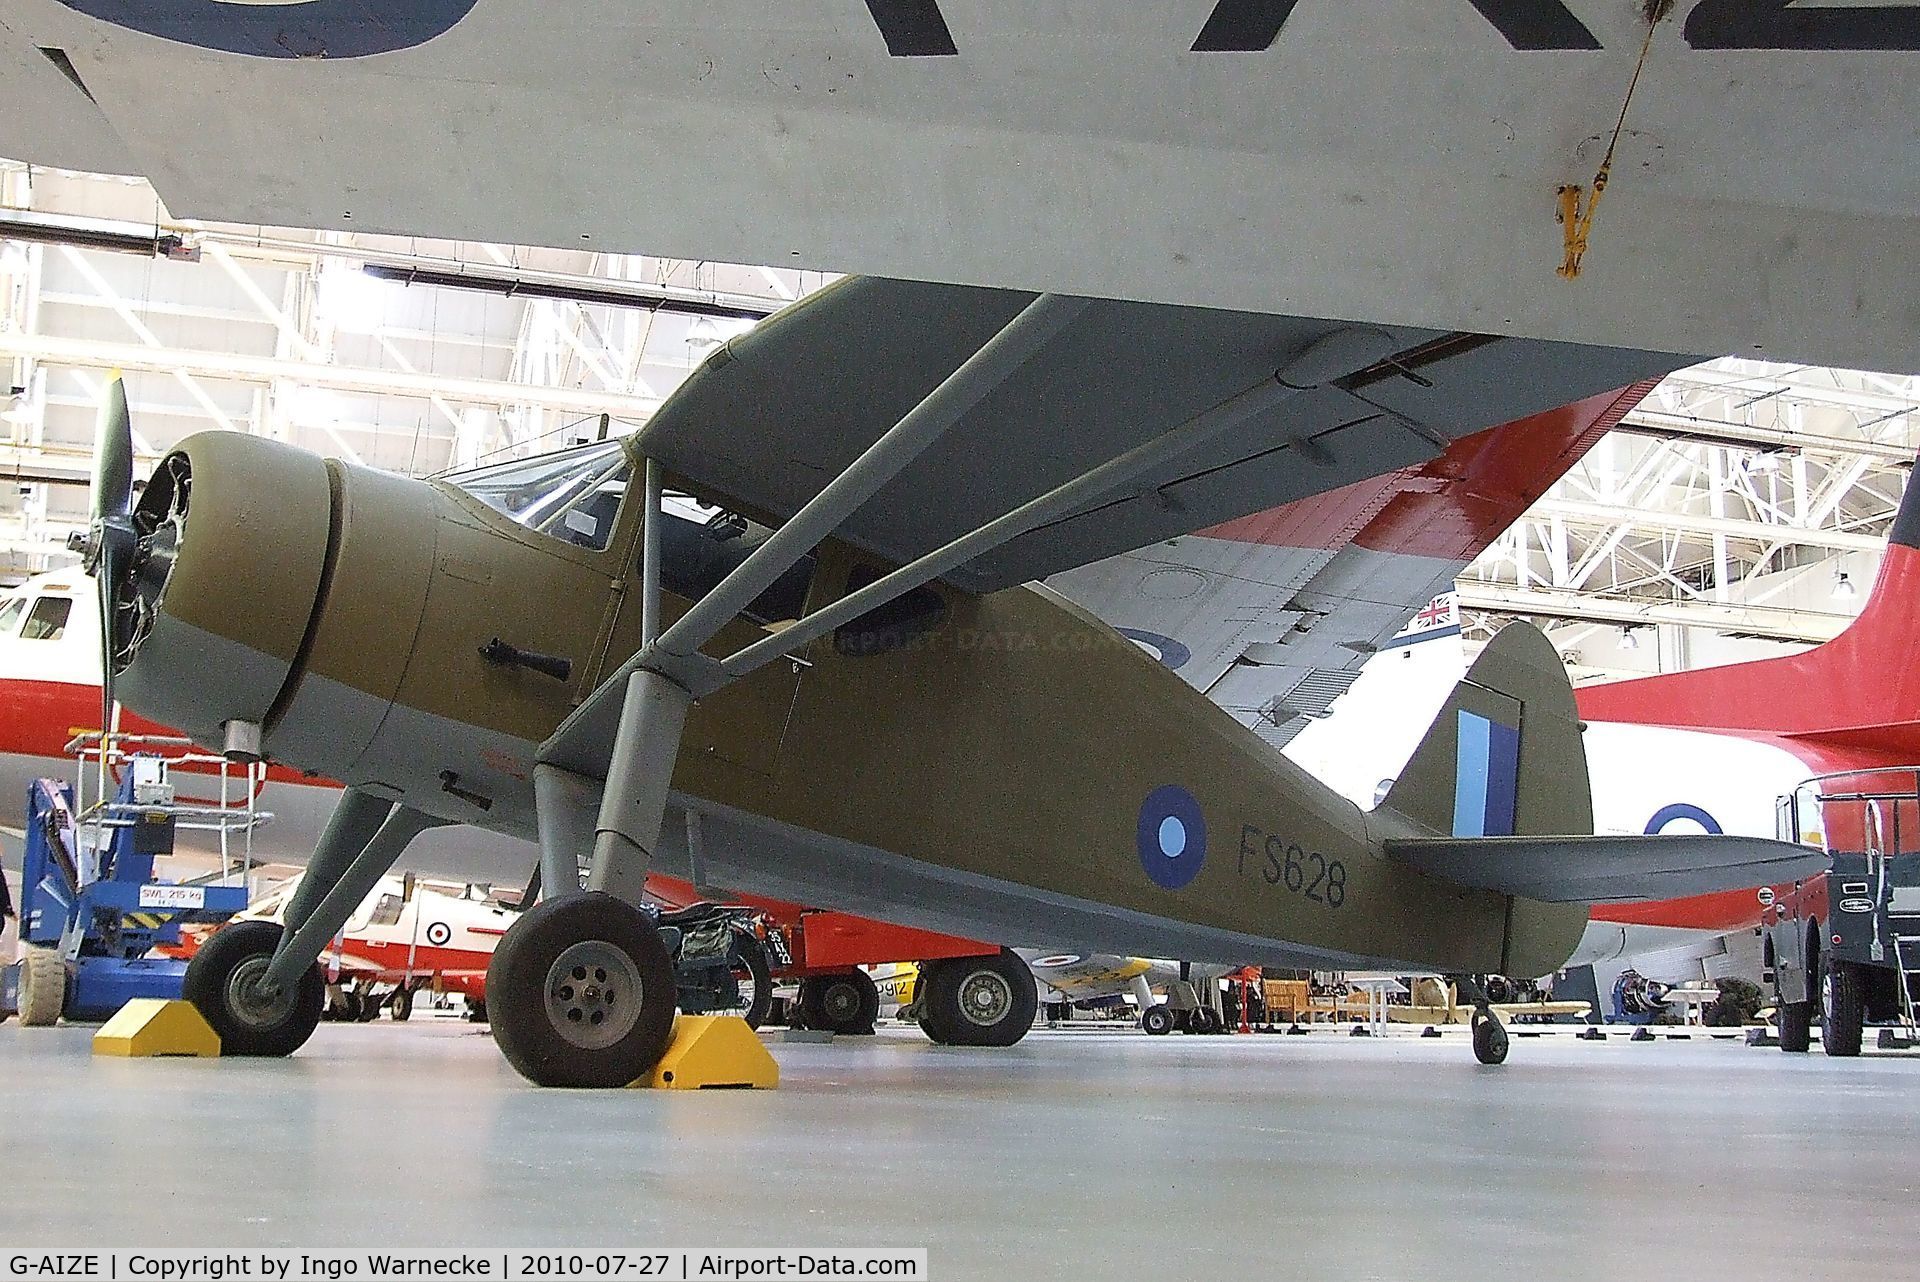 G-AIZE, Fairchild UC-61A Argus II (24W-41A) C/N 565, Fairchild 24W-41A at the RAF Museum, Cosford